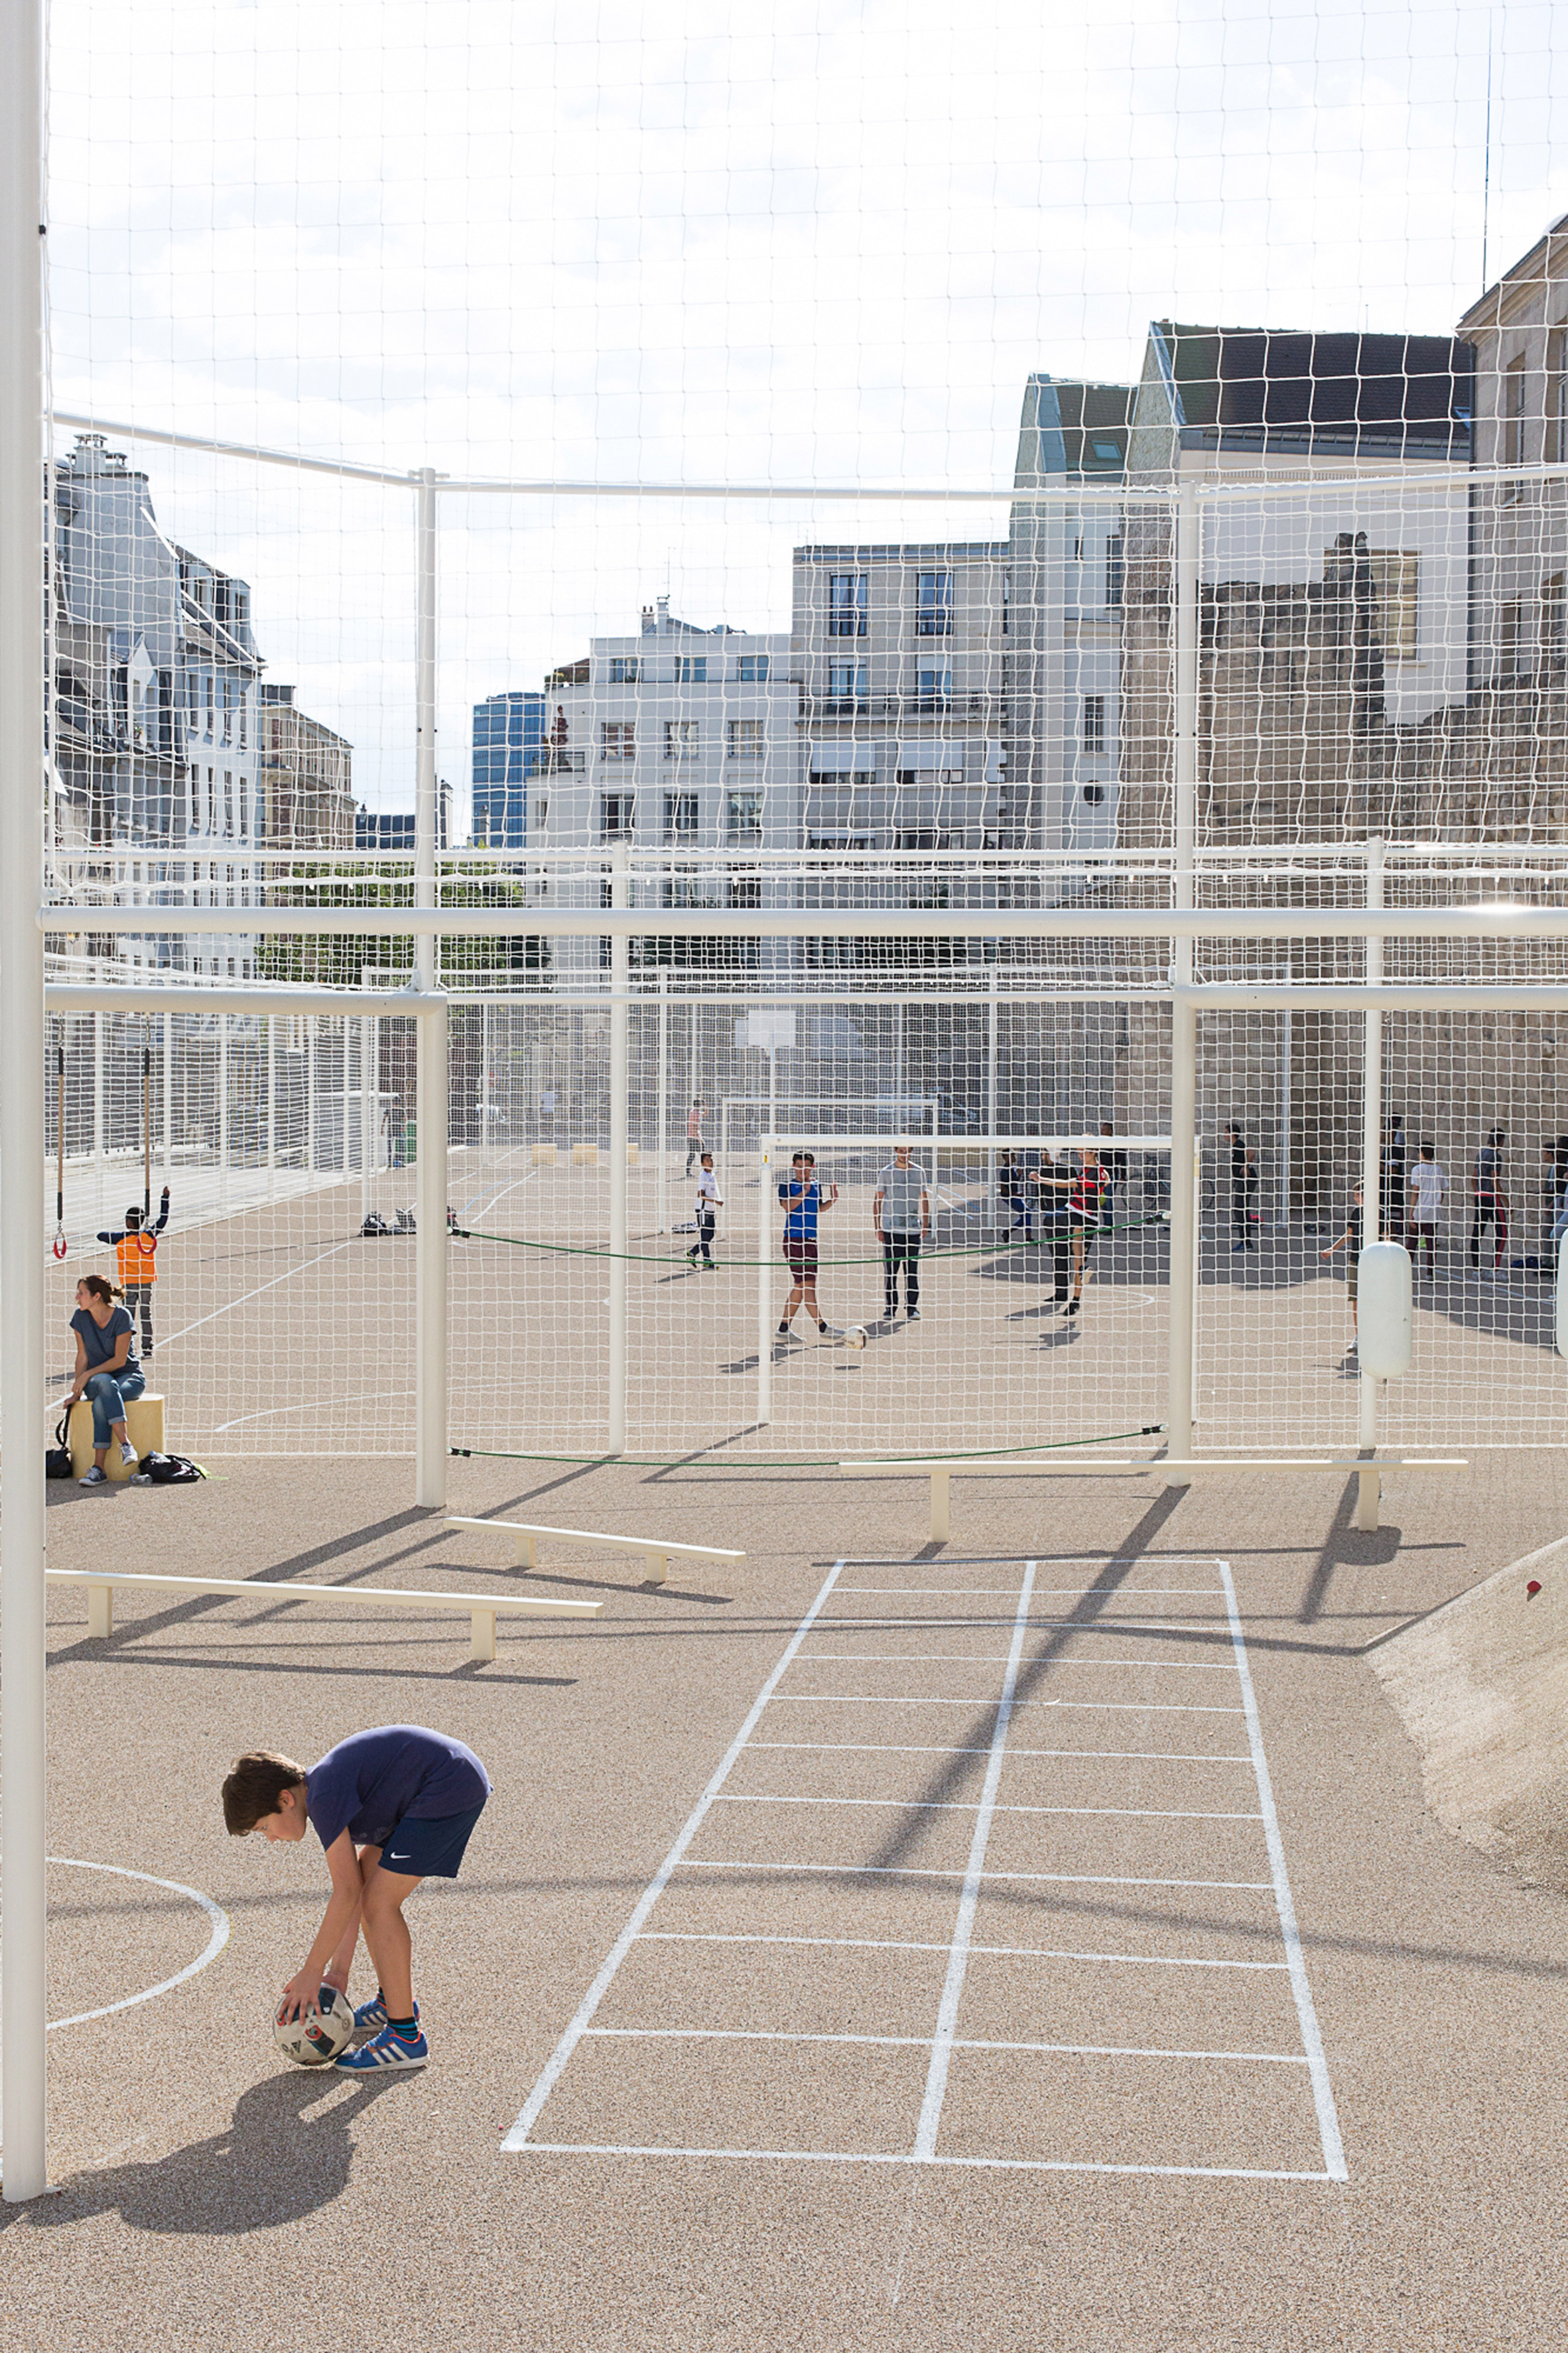 Le Terrain d’Education Physique des Jardins Saint-Paul playing courts